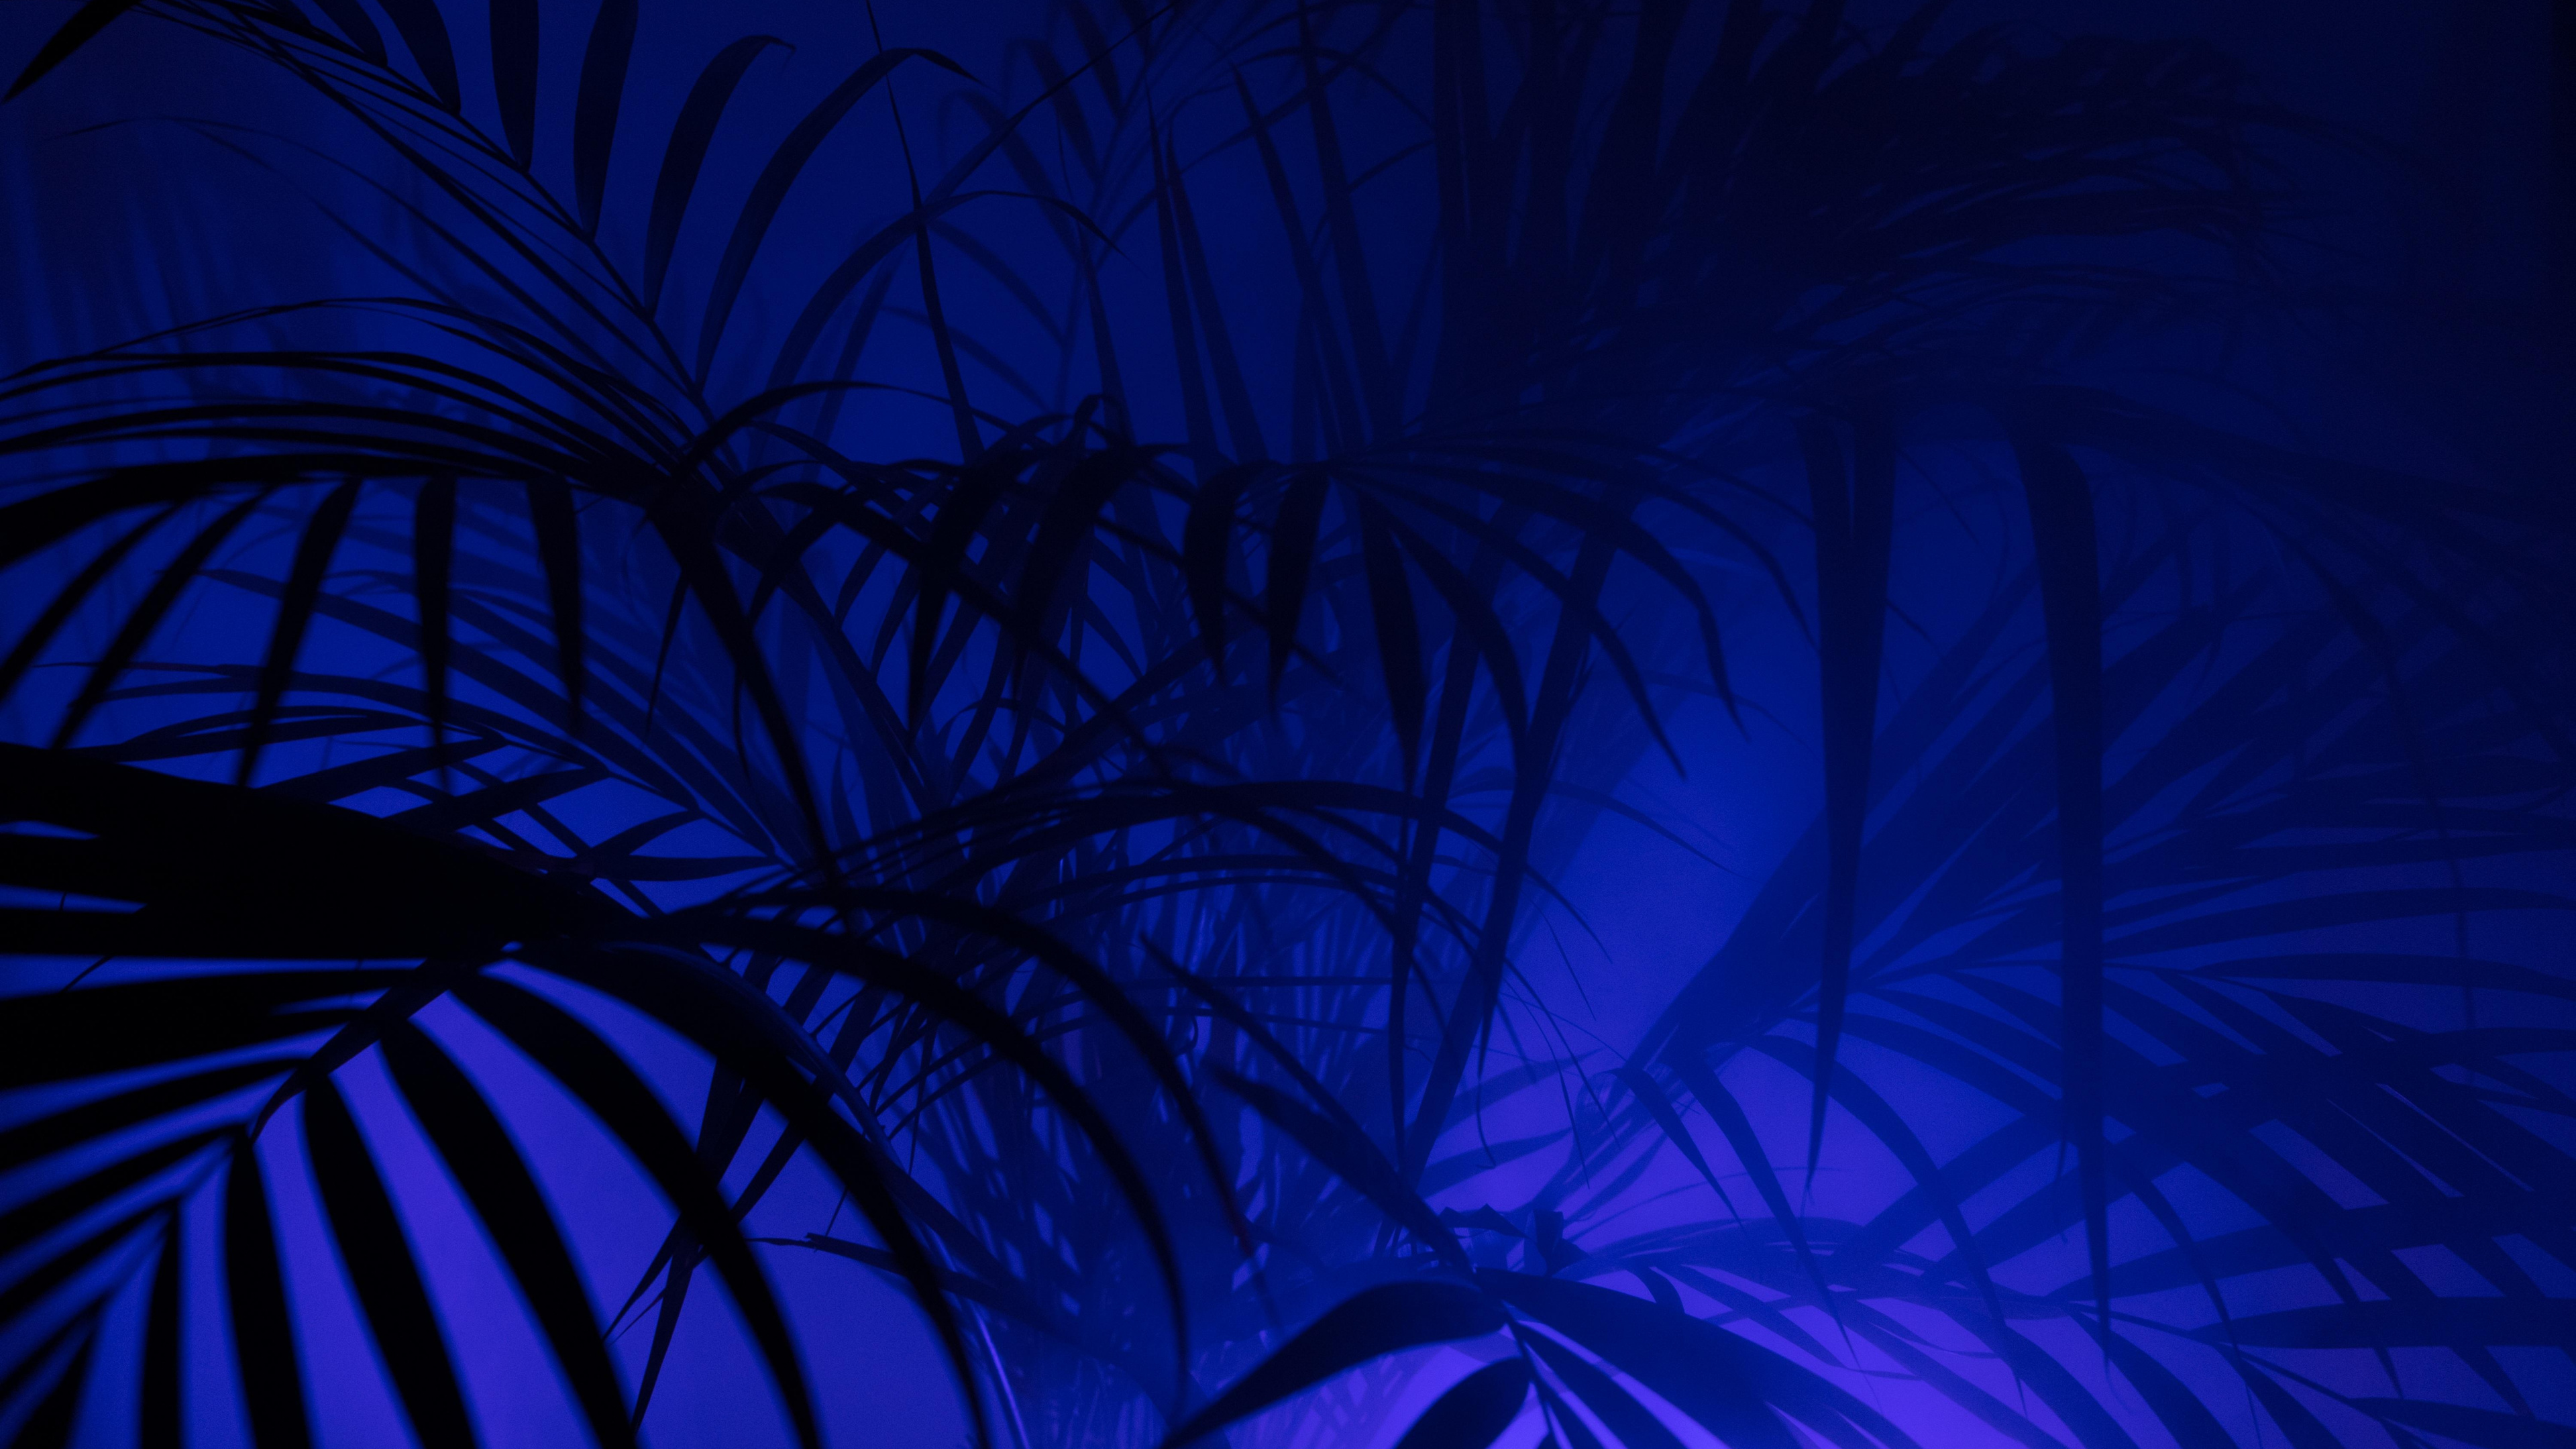 Grüne Pflanze in Blauem Hintergrund. Wallpaper in 3840x2160 Resolution